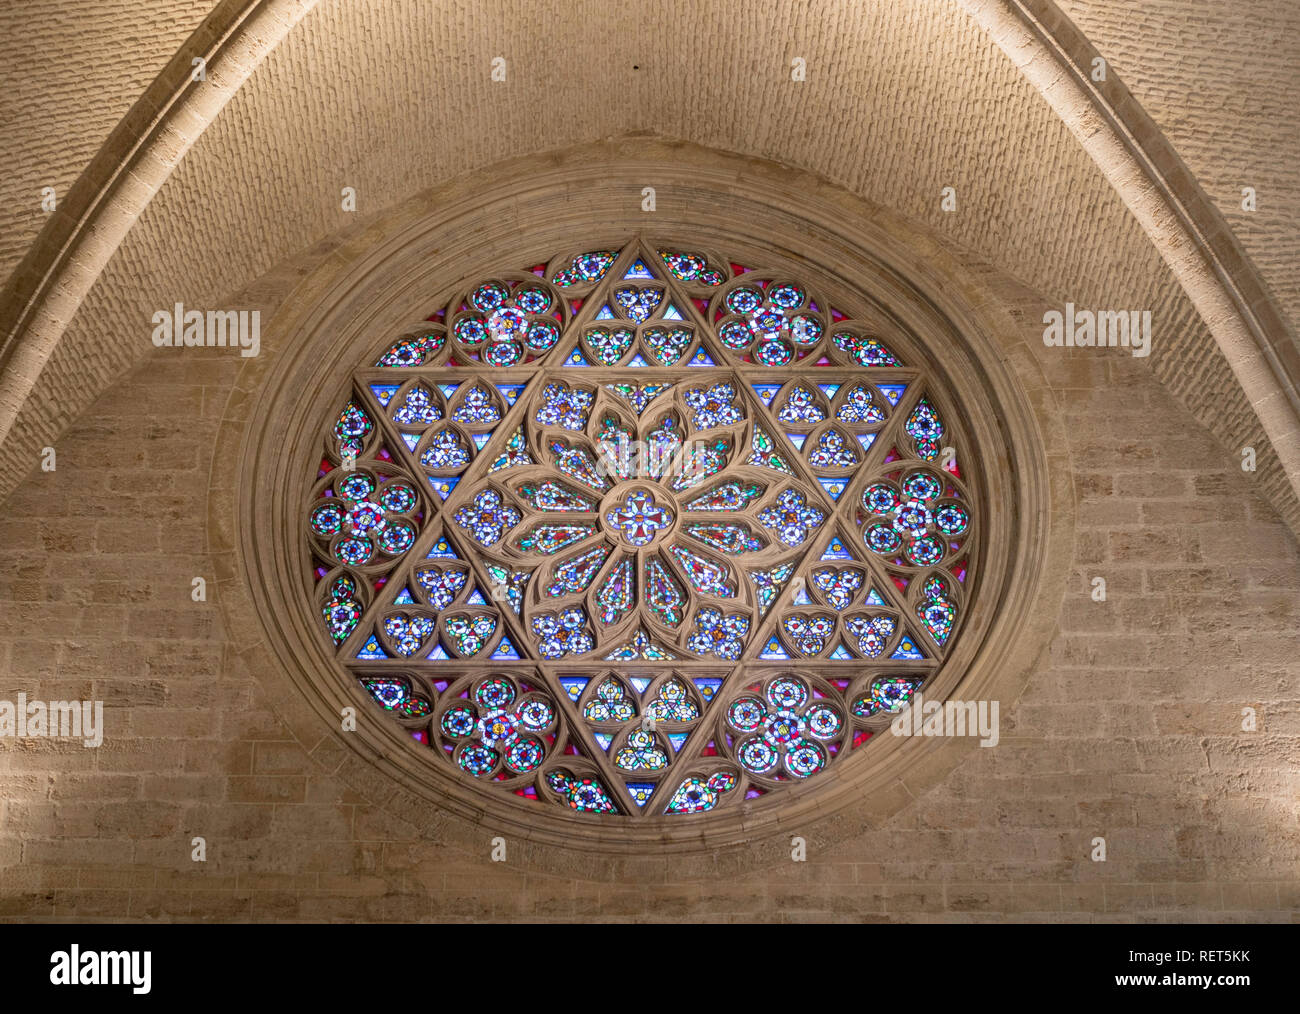 Rosace de vitraux dans la cathédrale de Valence, Espagne, Europe Banque D'Images